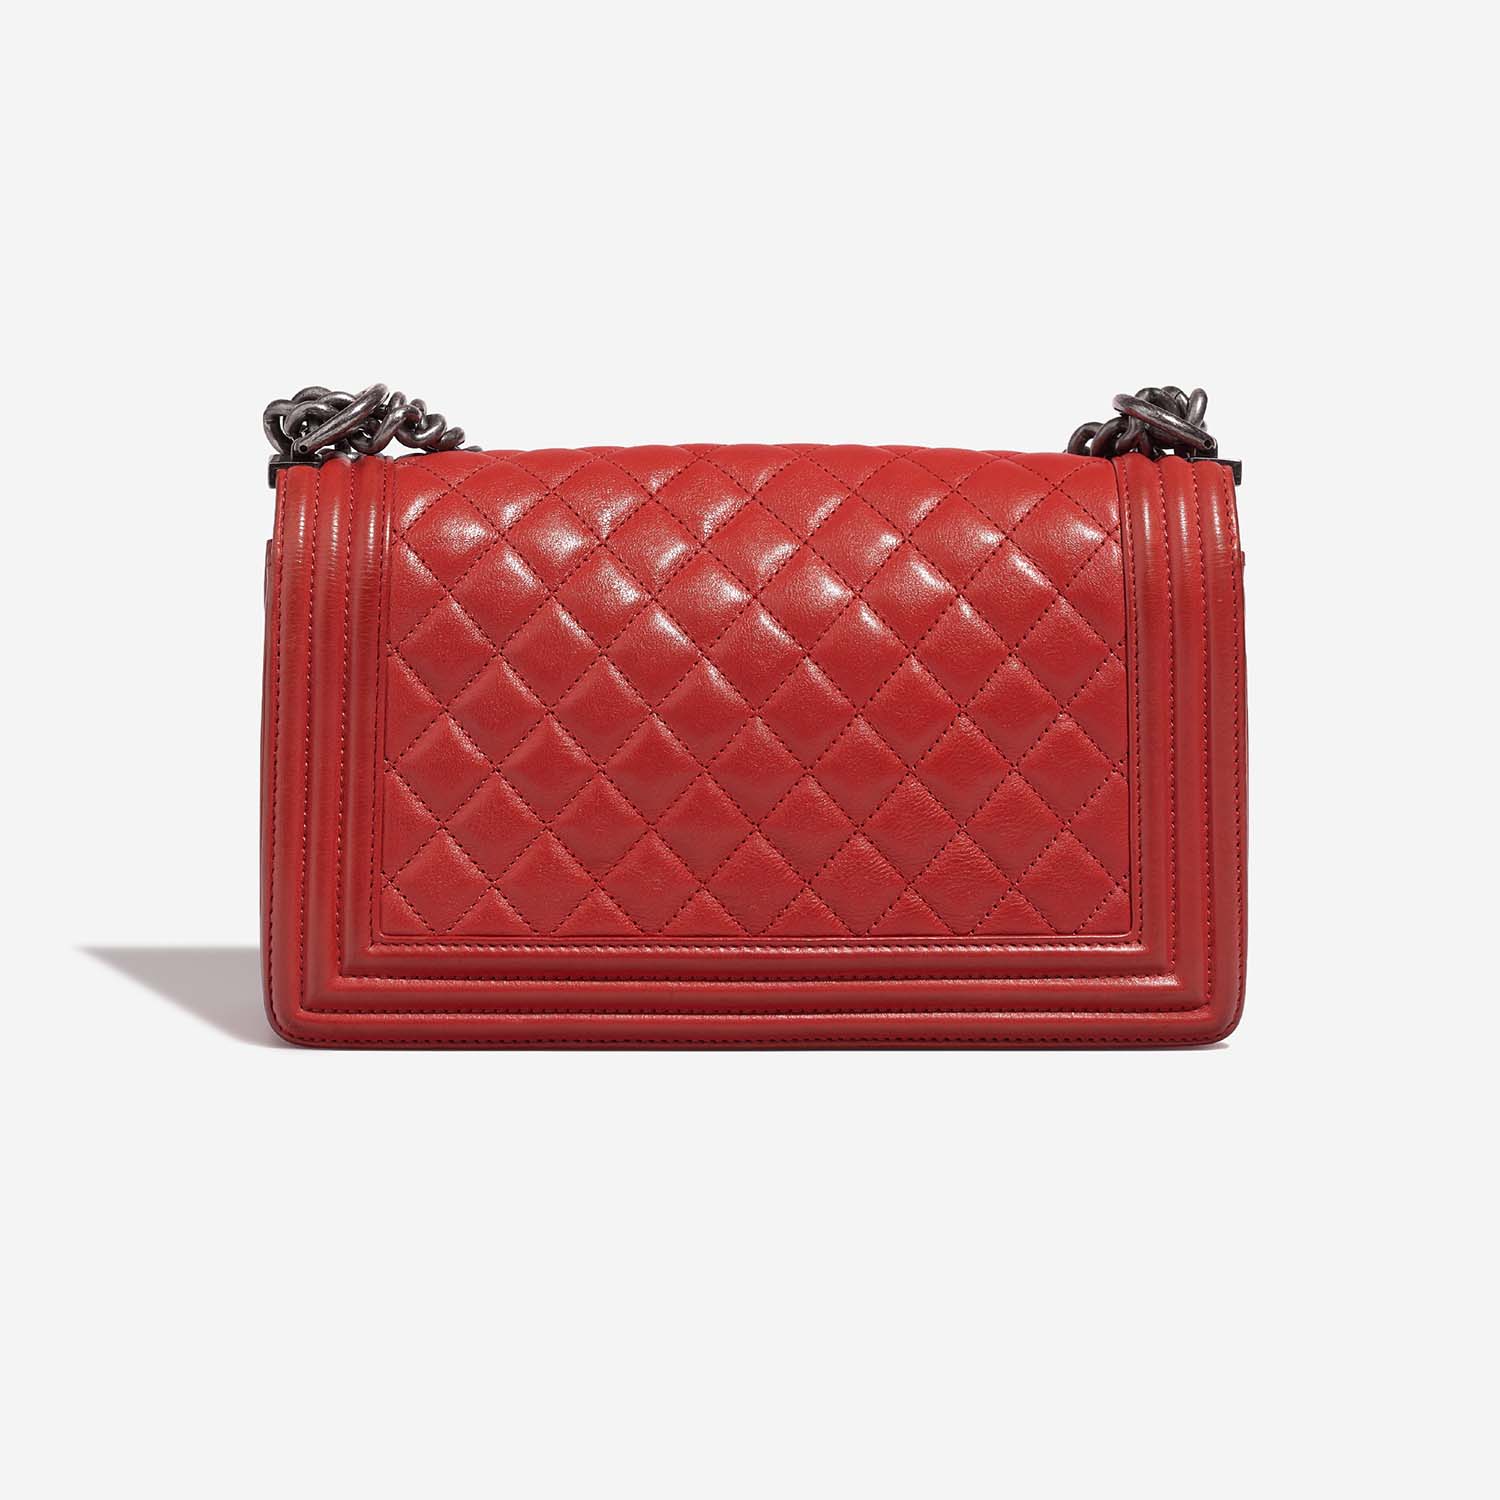 Chanel Boy OldMedium Rot 5B S | Verkaufen Sie Ihre Designer-Tasche auf Saclab.com